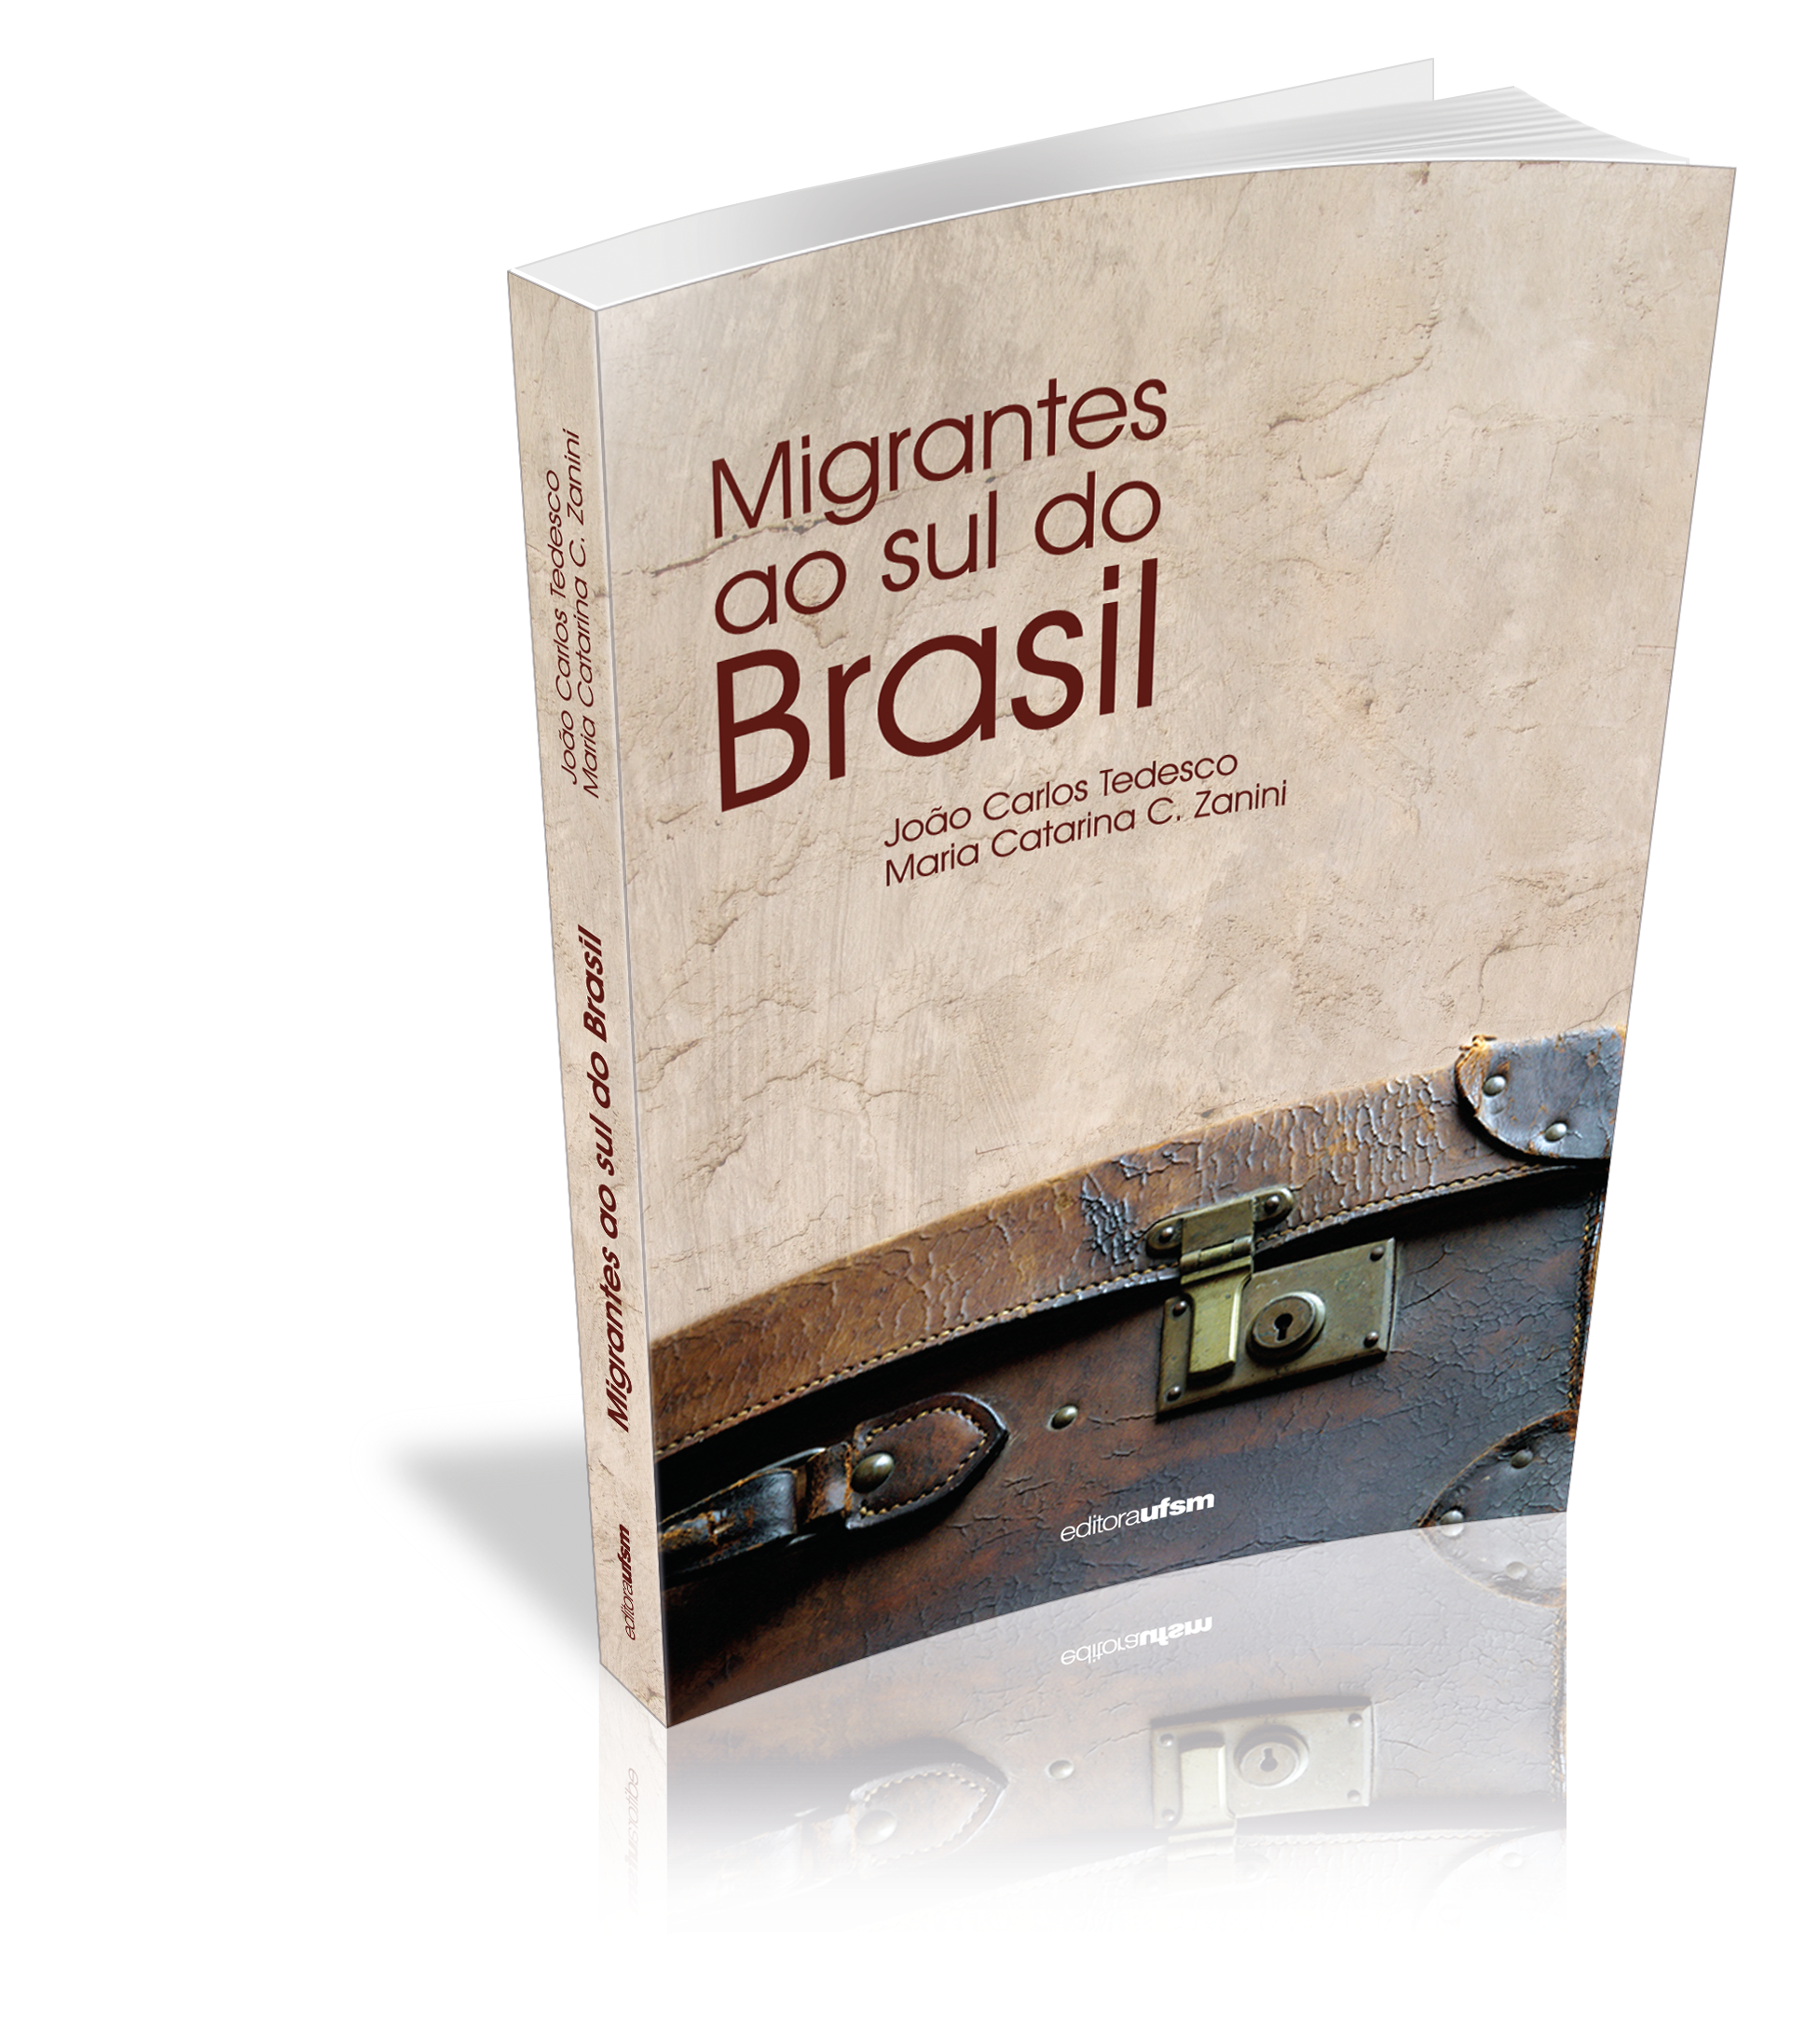 Capa do livro Migrantes ao sul do Brasil